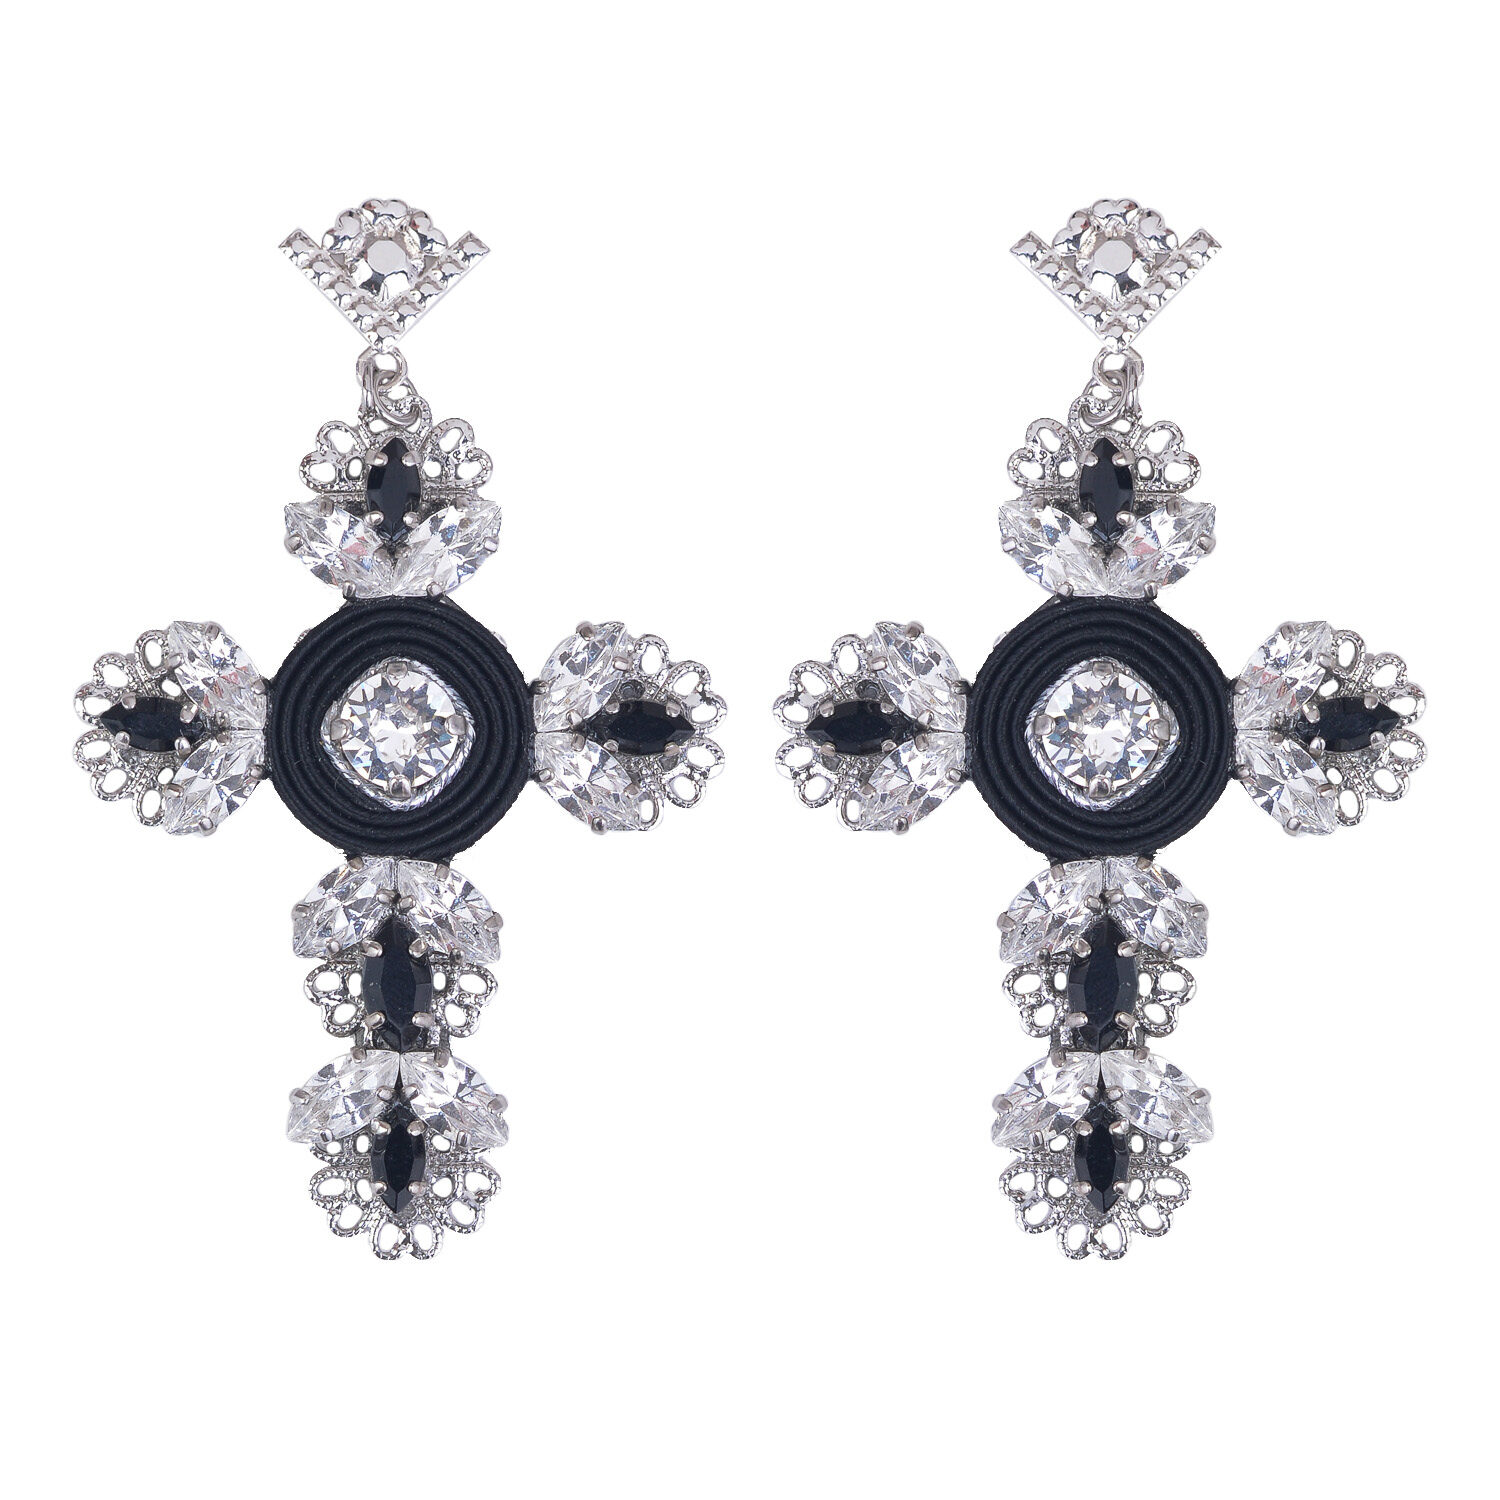 Croci con cristalli swarovski su orecchini da donna pendenti grandi neri e argento